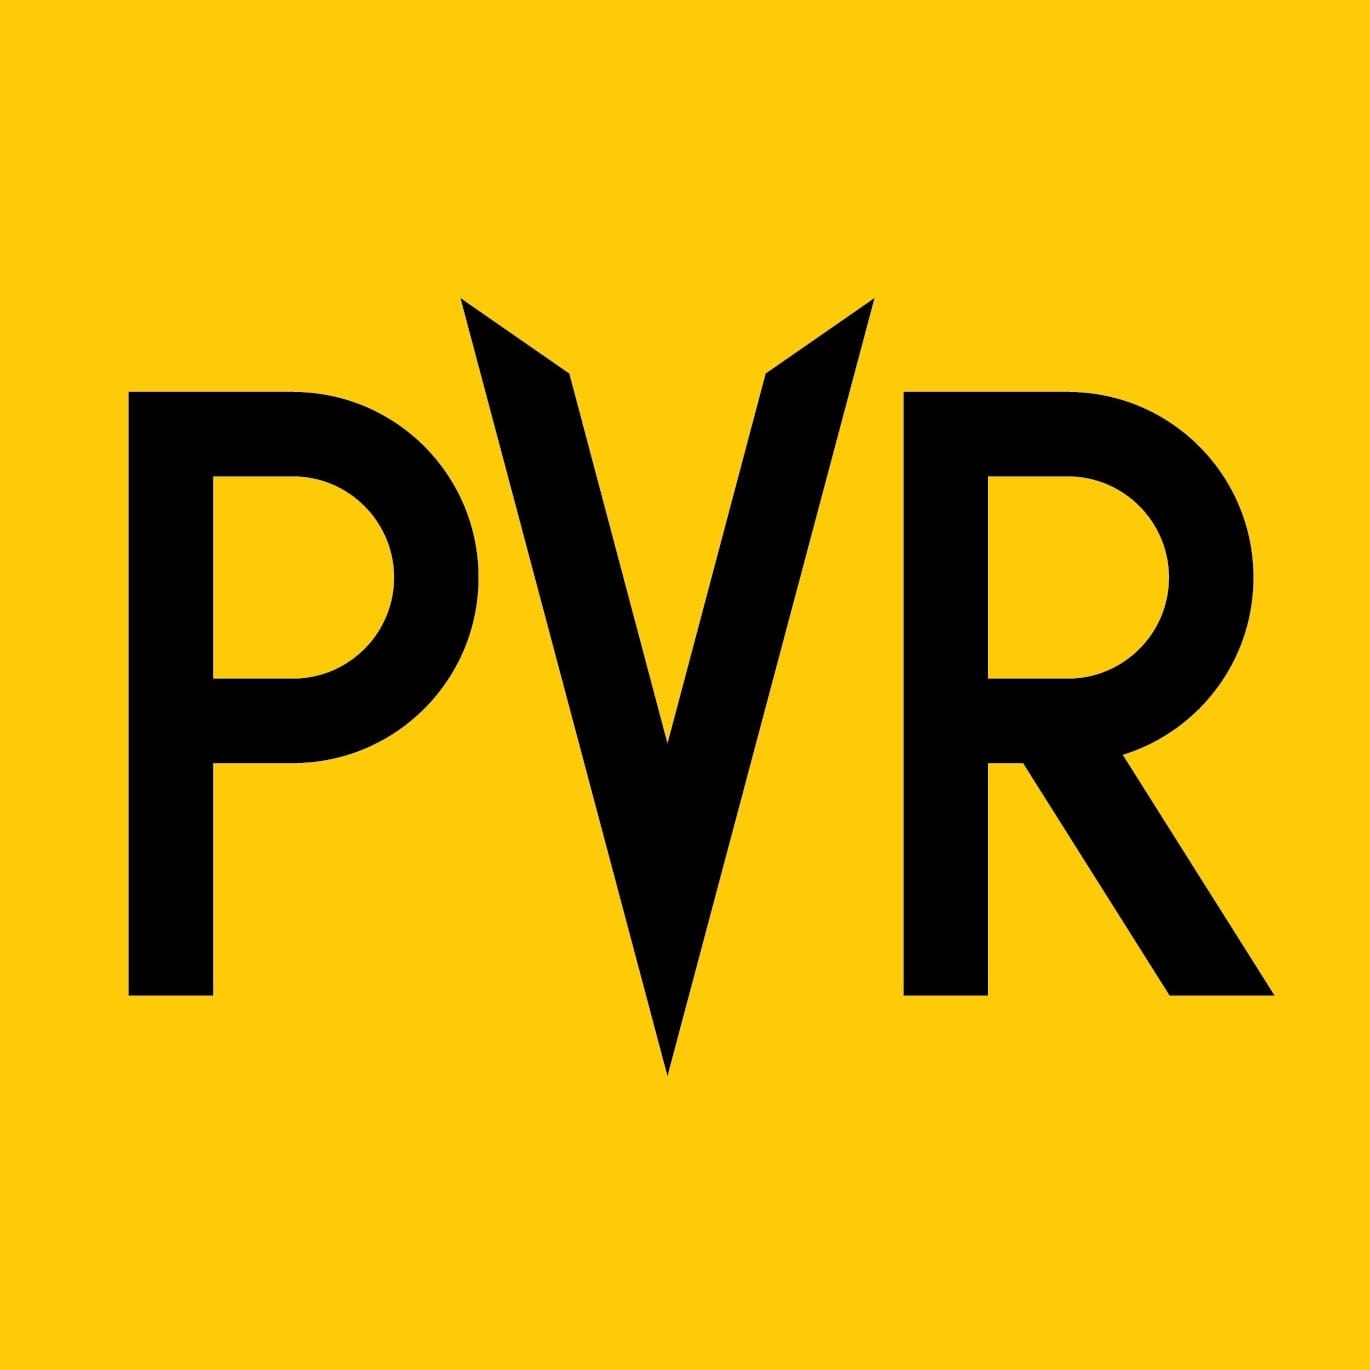 PVR - Logo